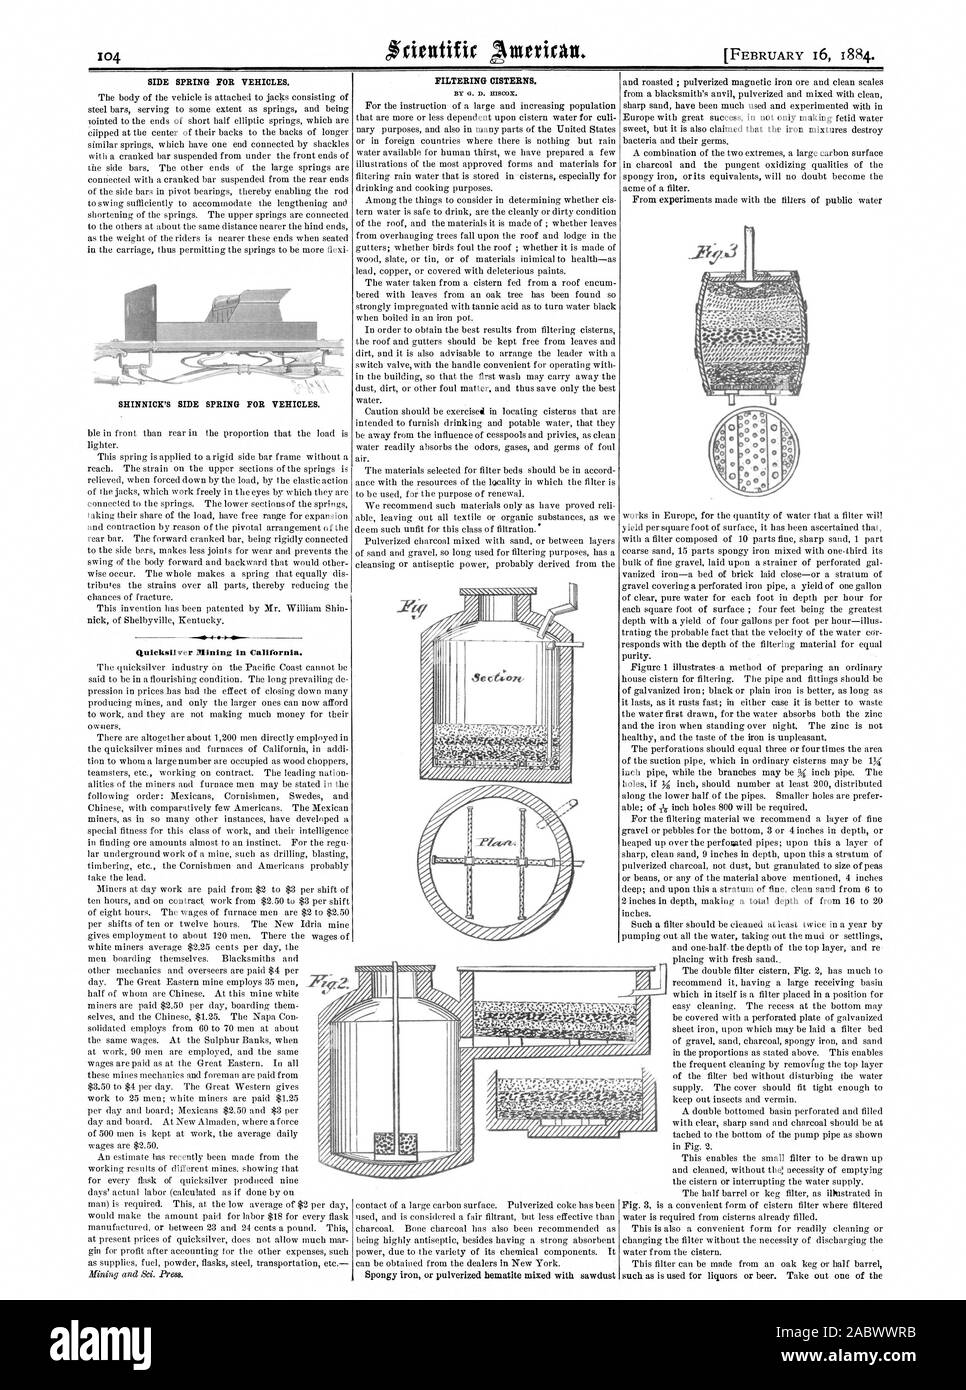 Molla laterale per veicoli. SHINNICK lato della molla per veicoli. Quicksilver Mining in California. Cisterne di filtraggio. -1 Ale Ale Zff, Scientific American, 1884-02-16 Foto Stock